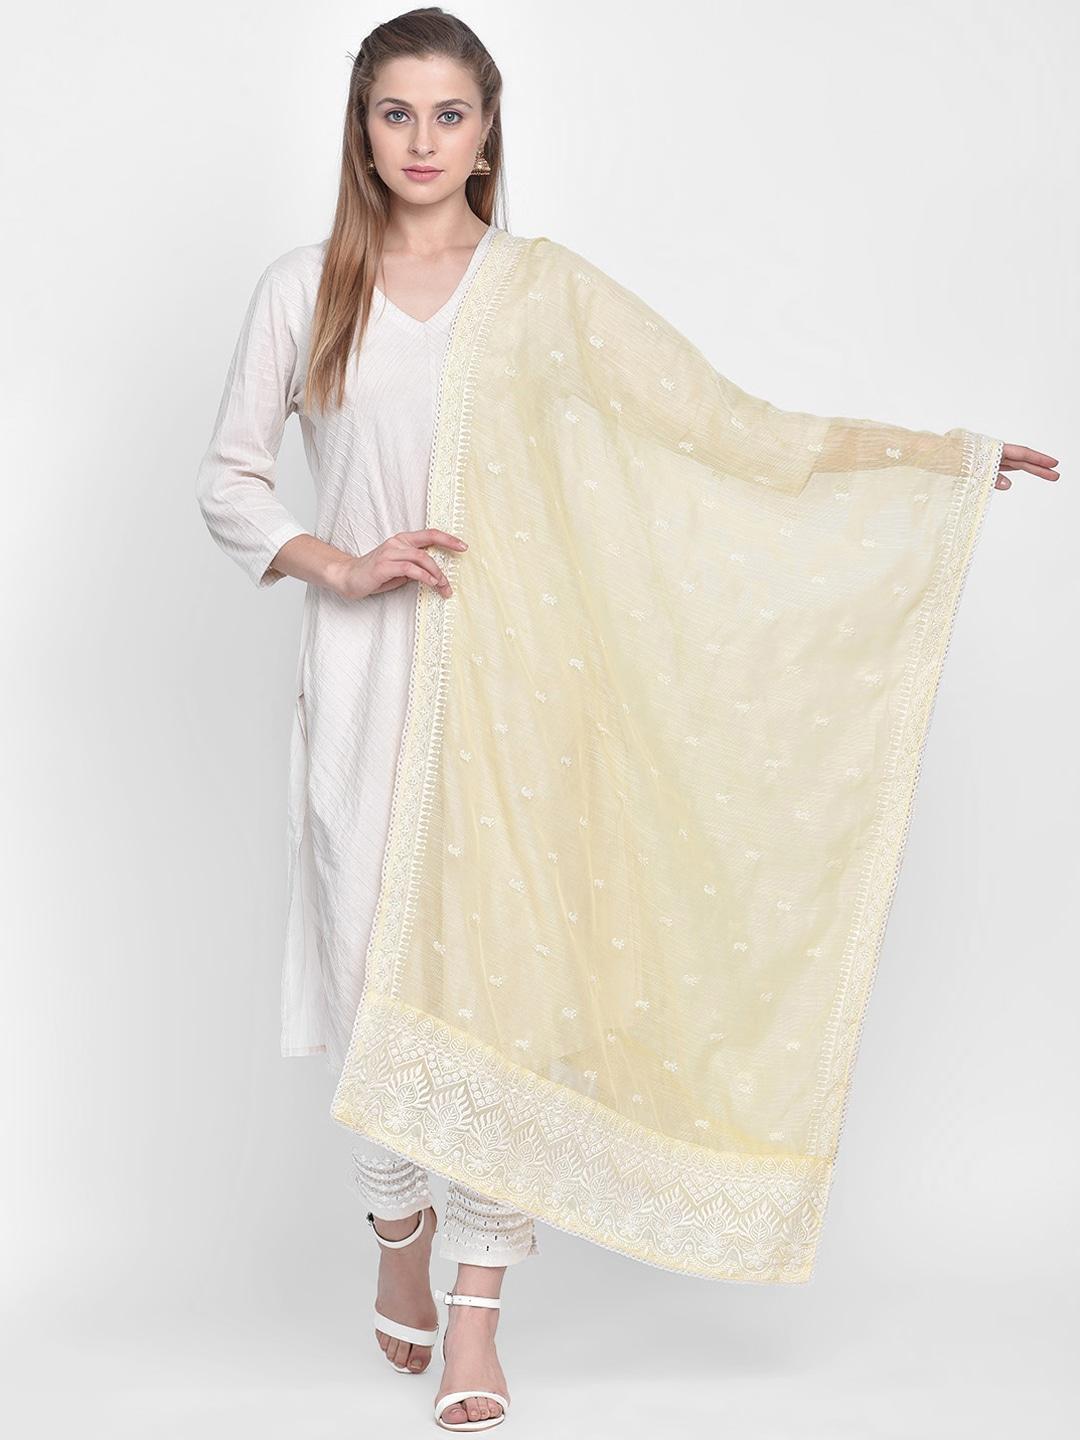 dupatta-bazaar-yellow-&-white-embroidered-net-dupatta